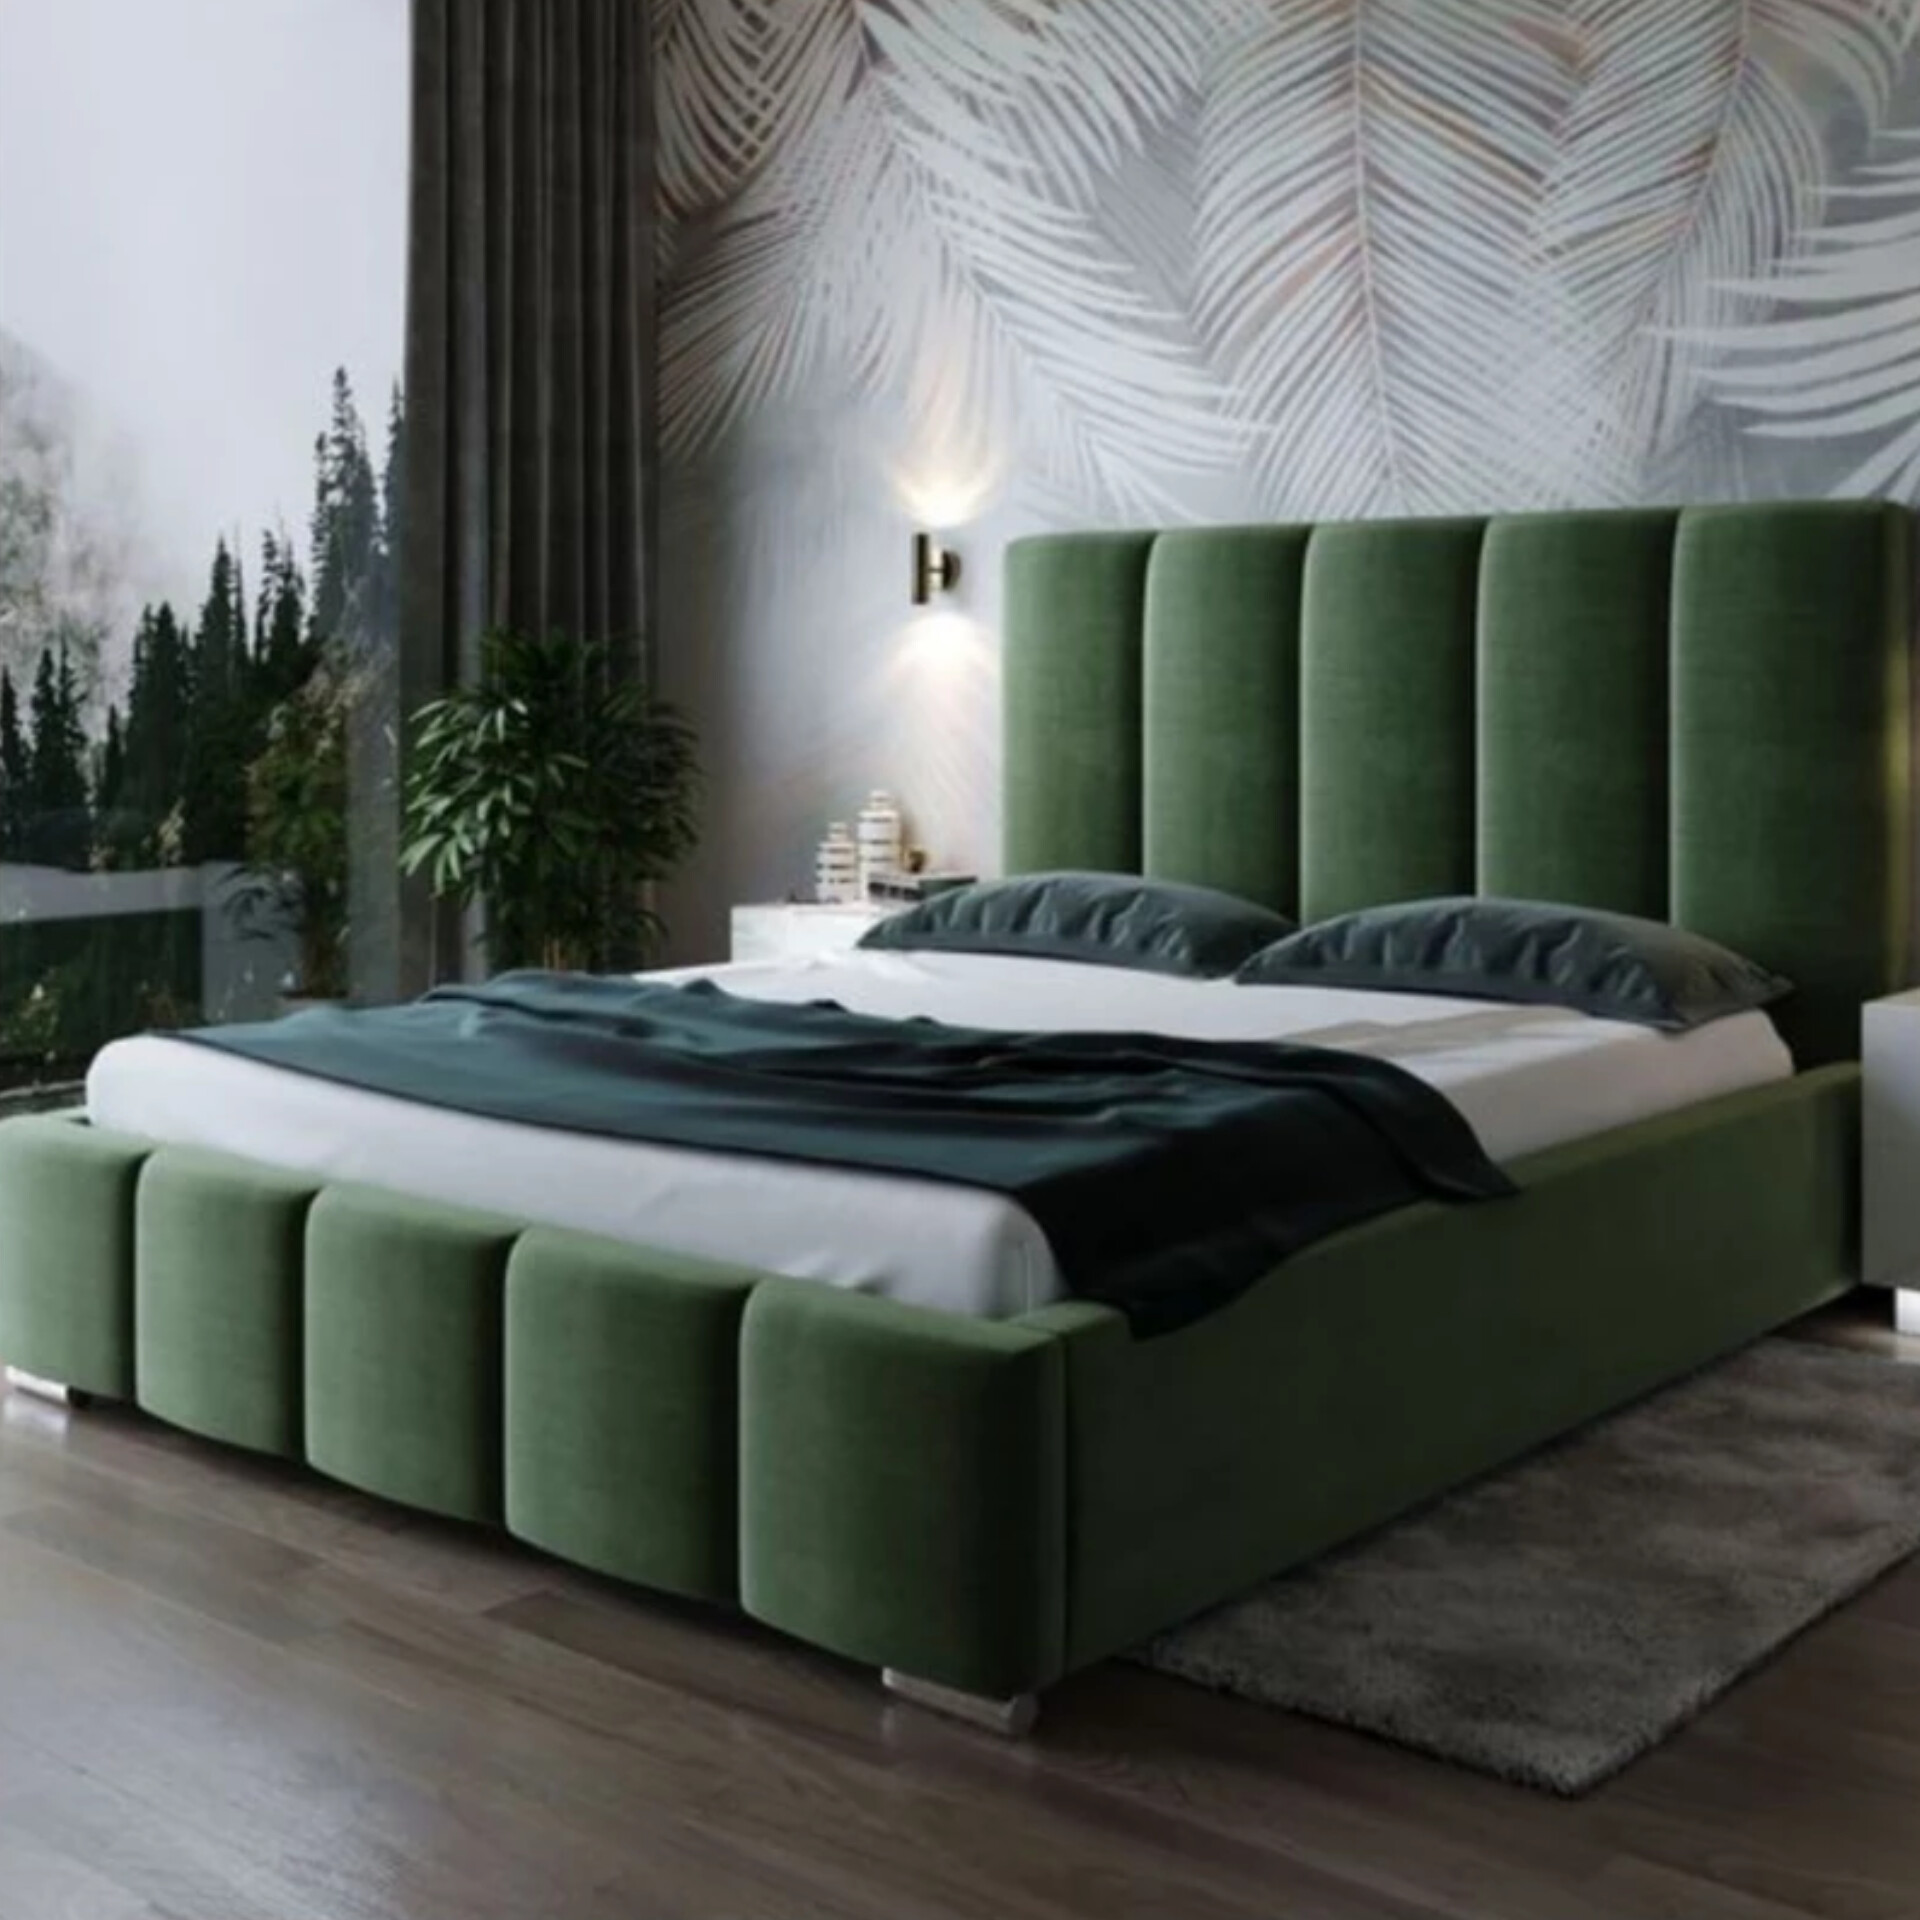 تخت خواب دونفره مدل پریما سایز 120x200 سانتی متر